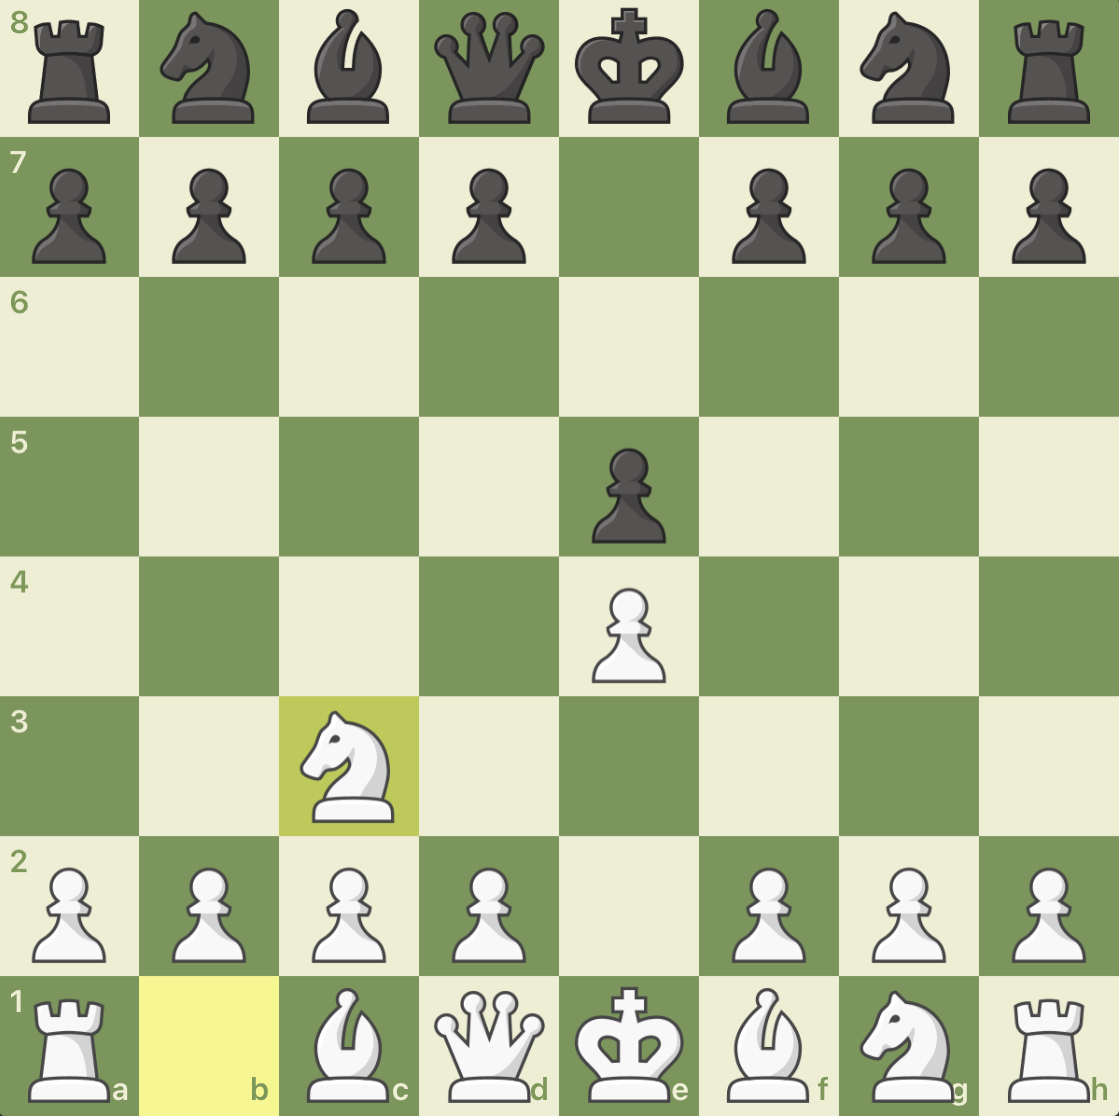 Chess openings: Vienna (C25)